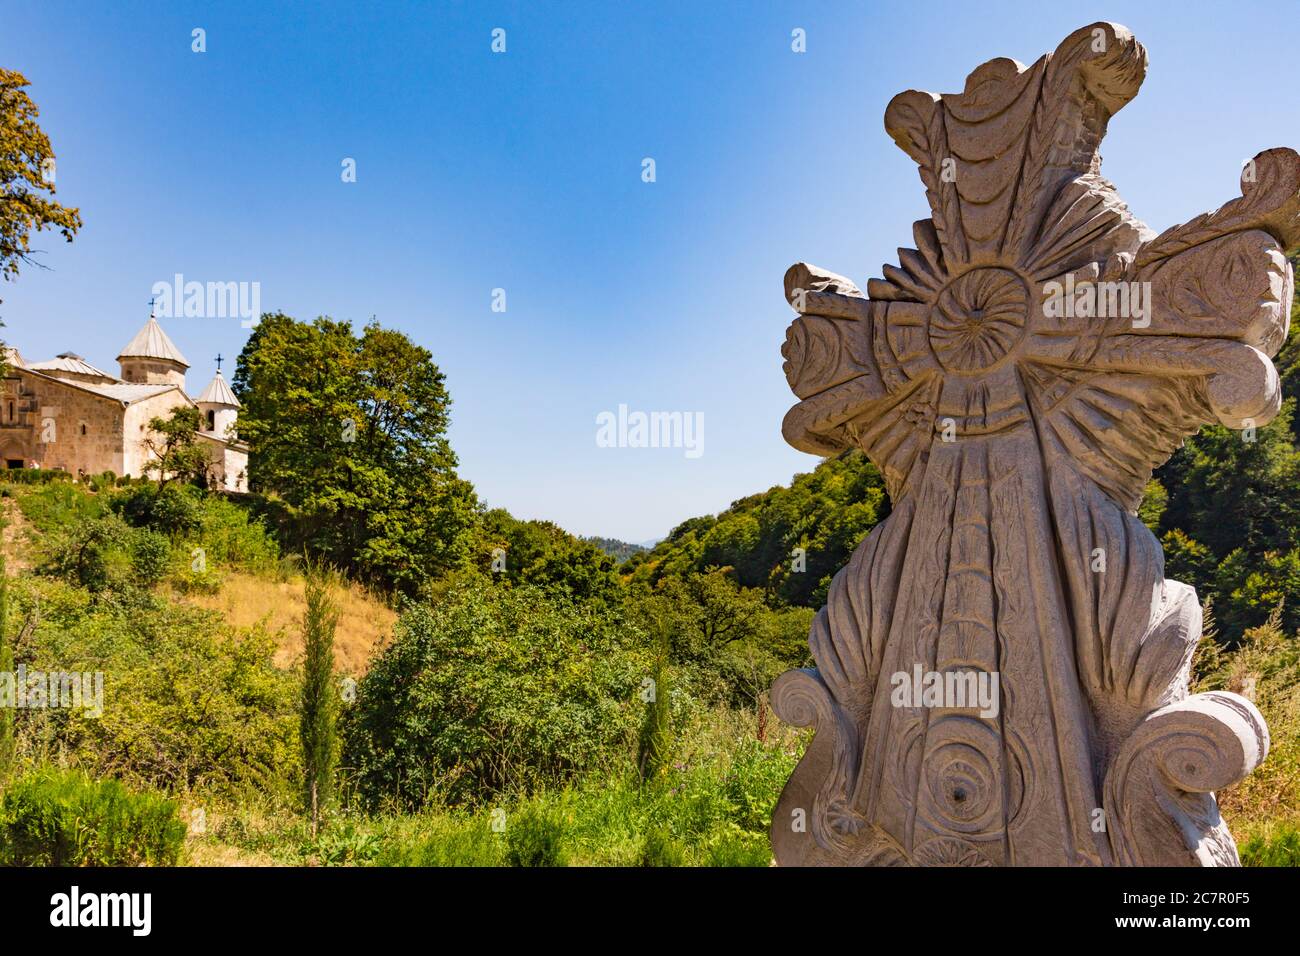 Haghartsine landmark of Tavush Armenia eastern Europe Stock Photo